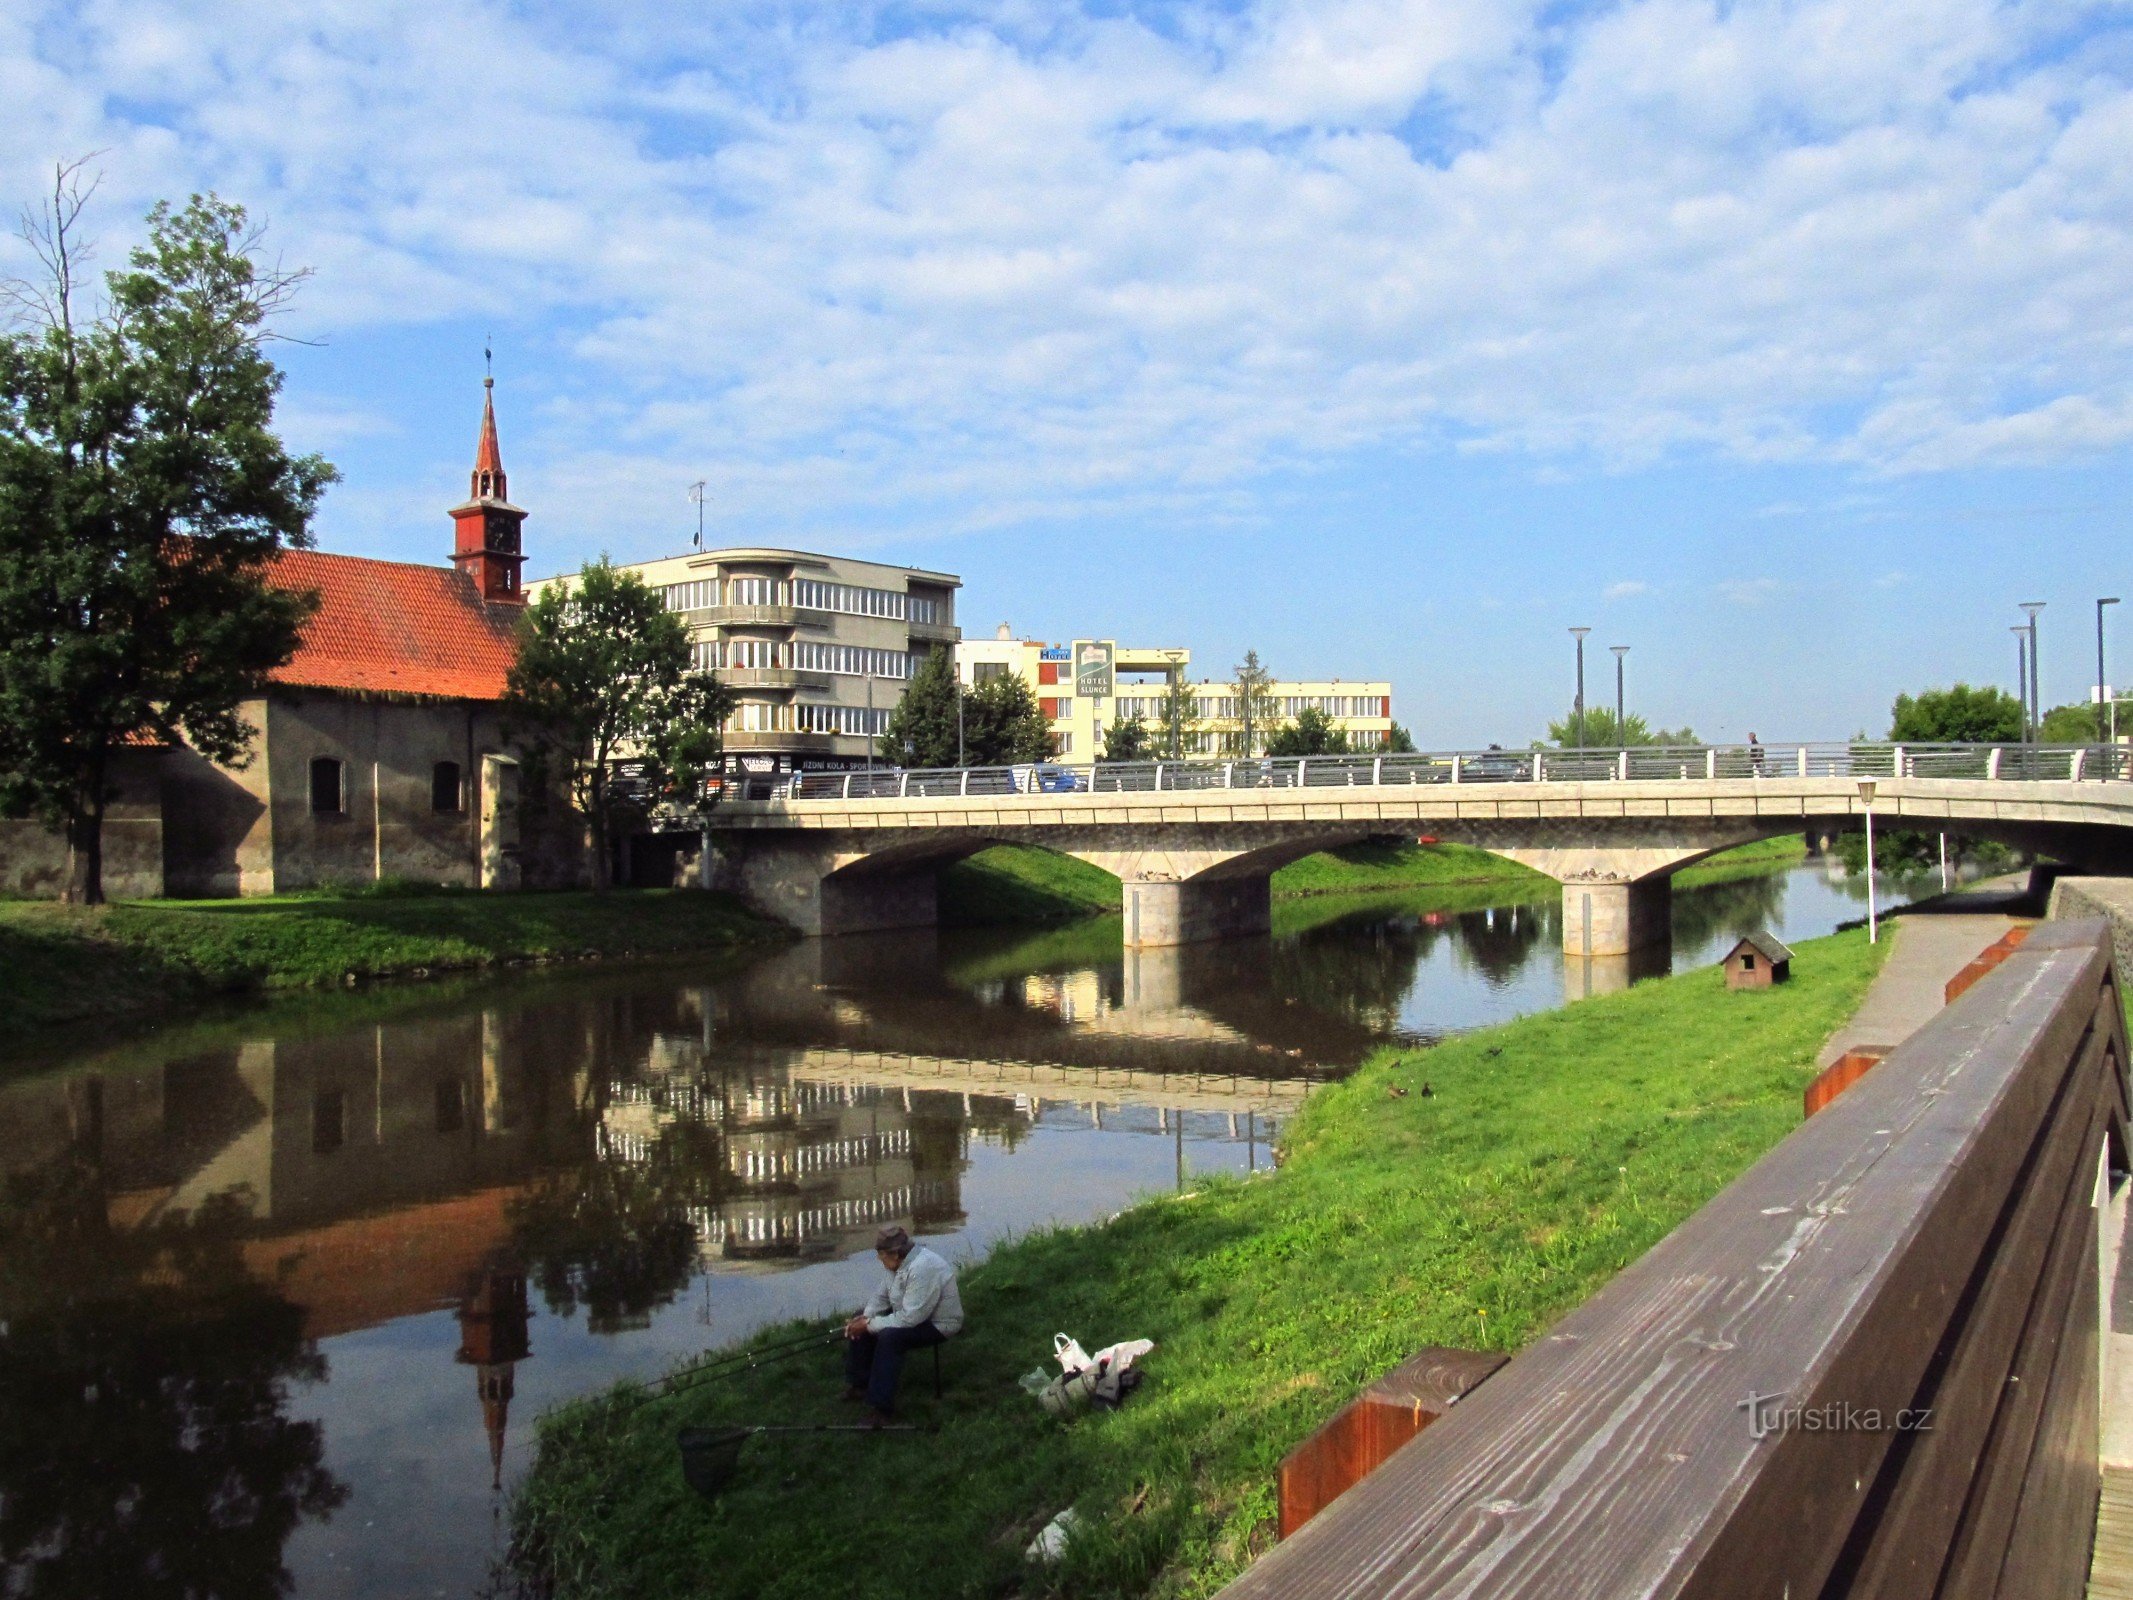 02 Havlíčkův Brod, most i kościół św. Katarzyny